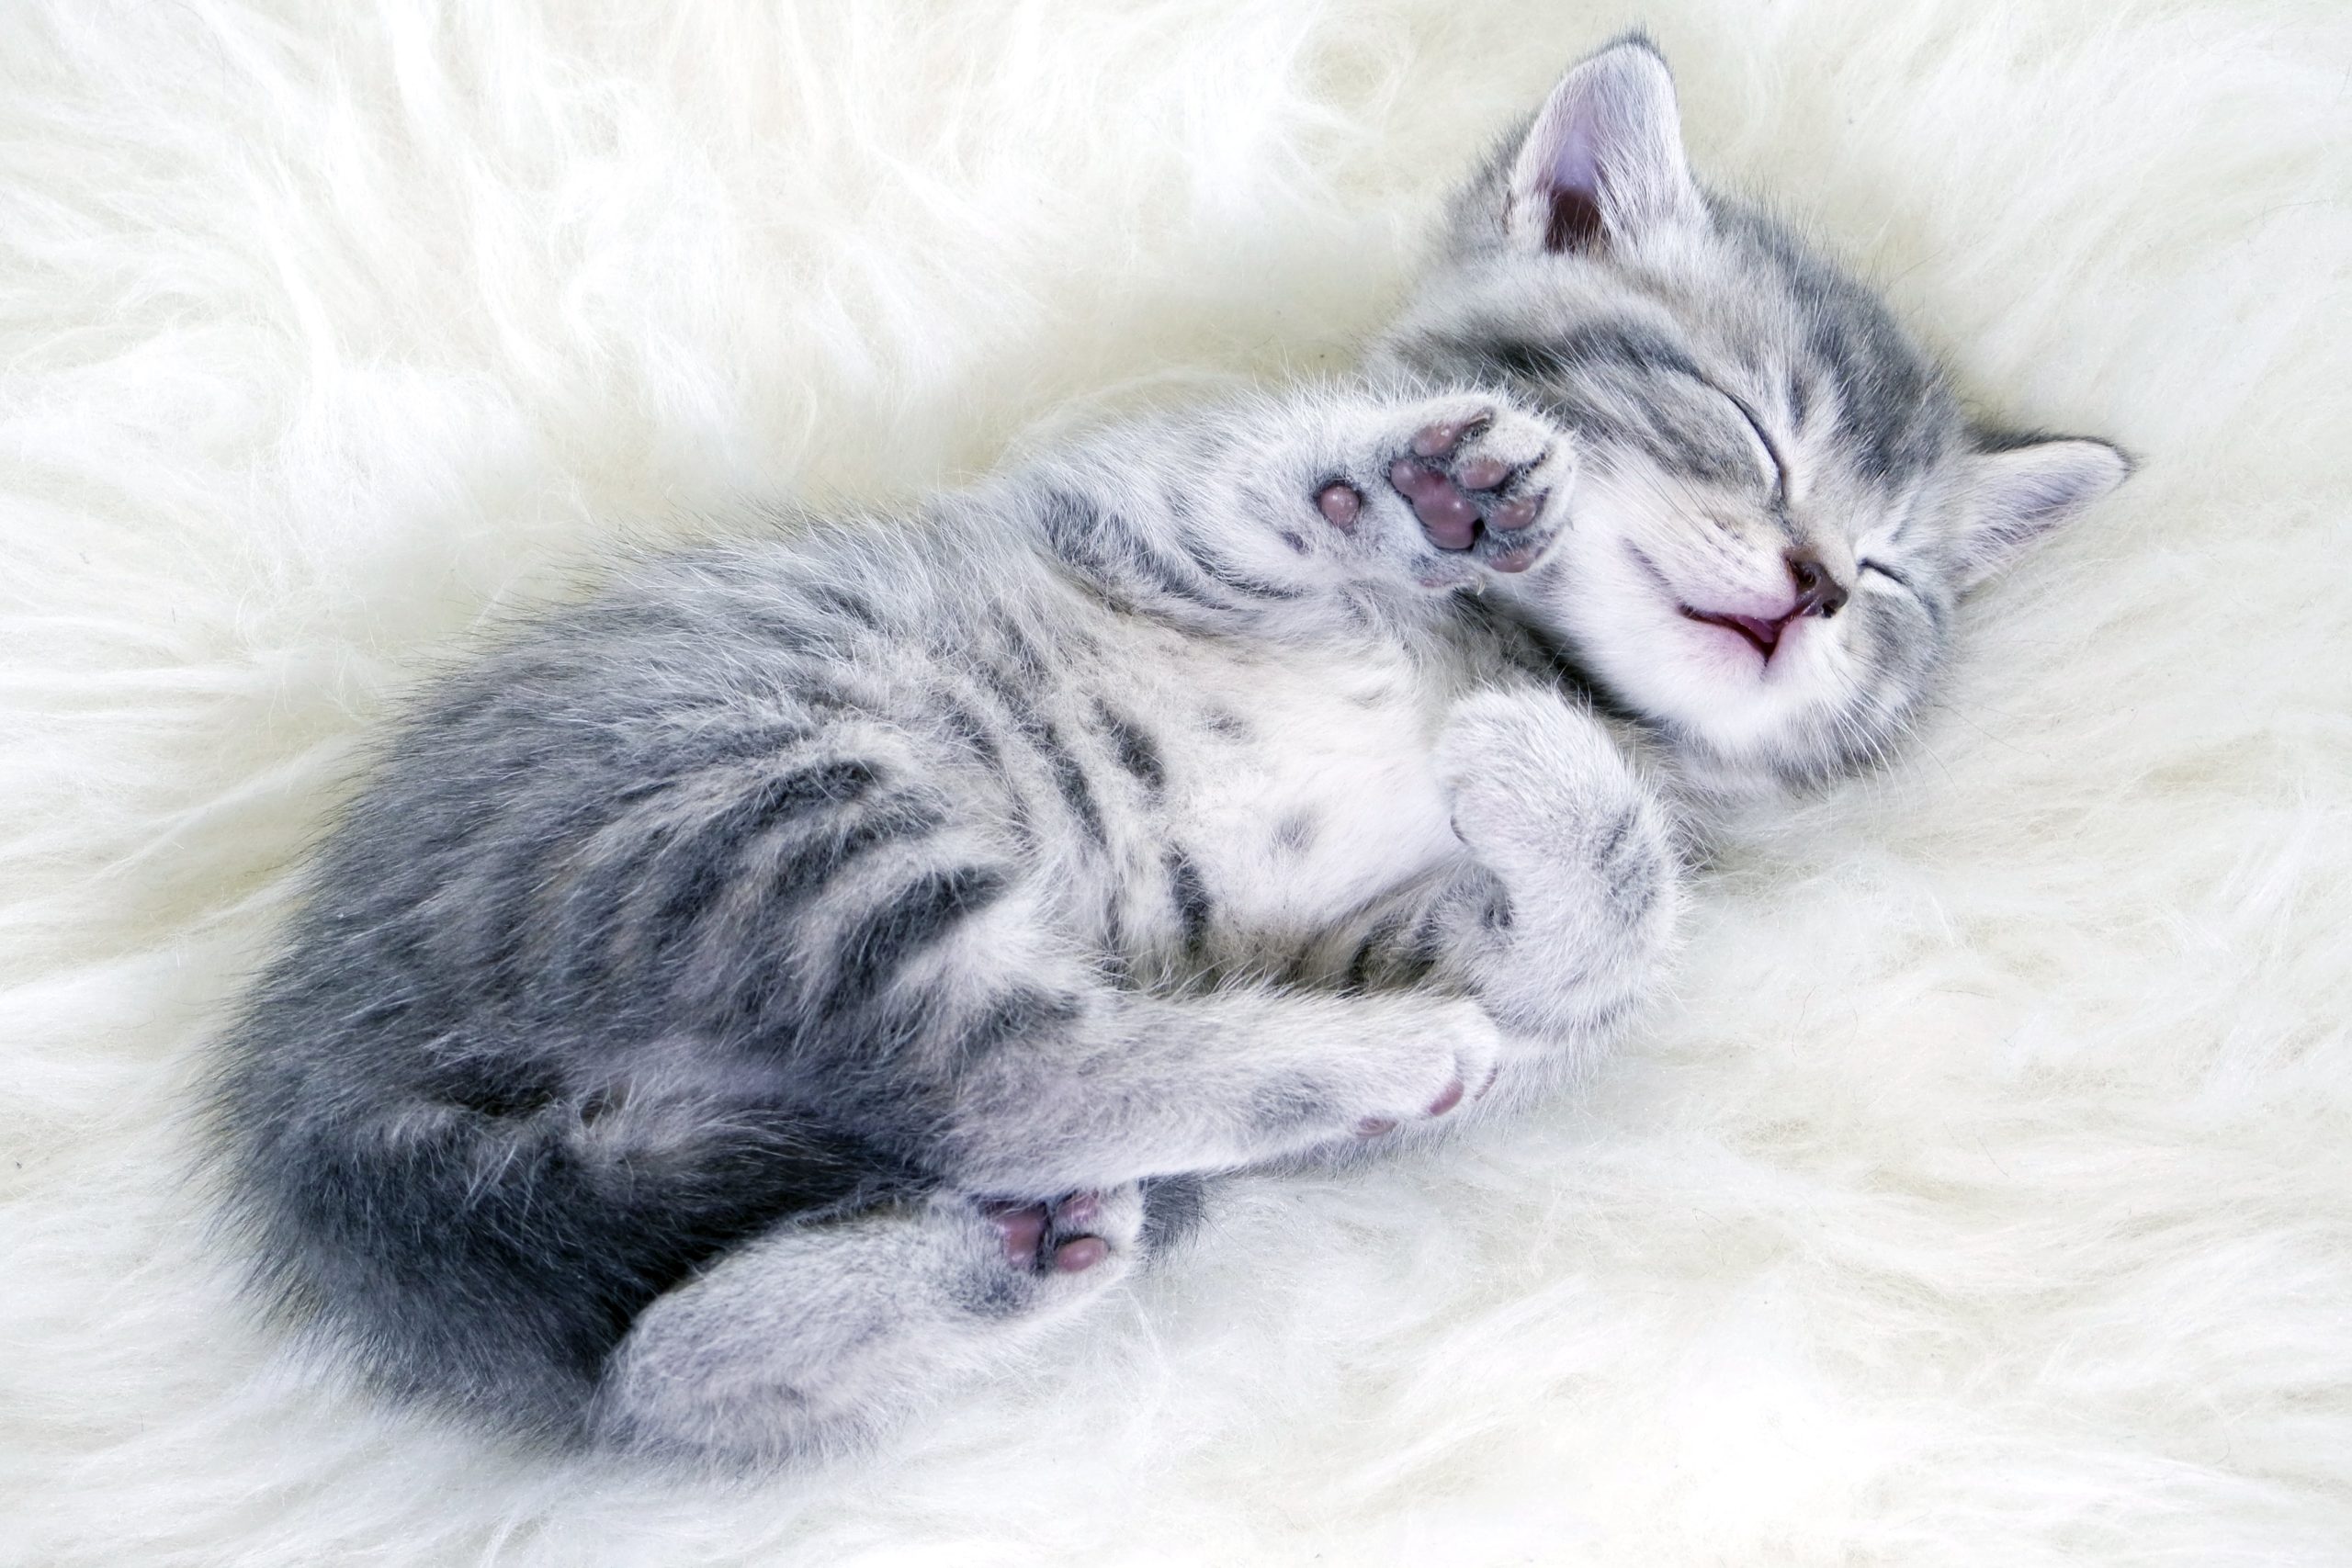 Avbildet: Kattunge som sover